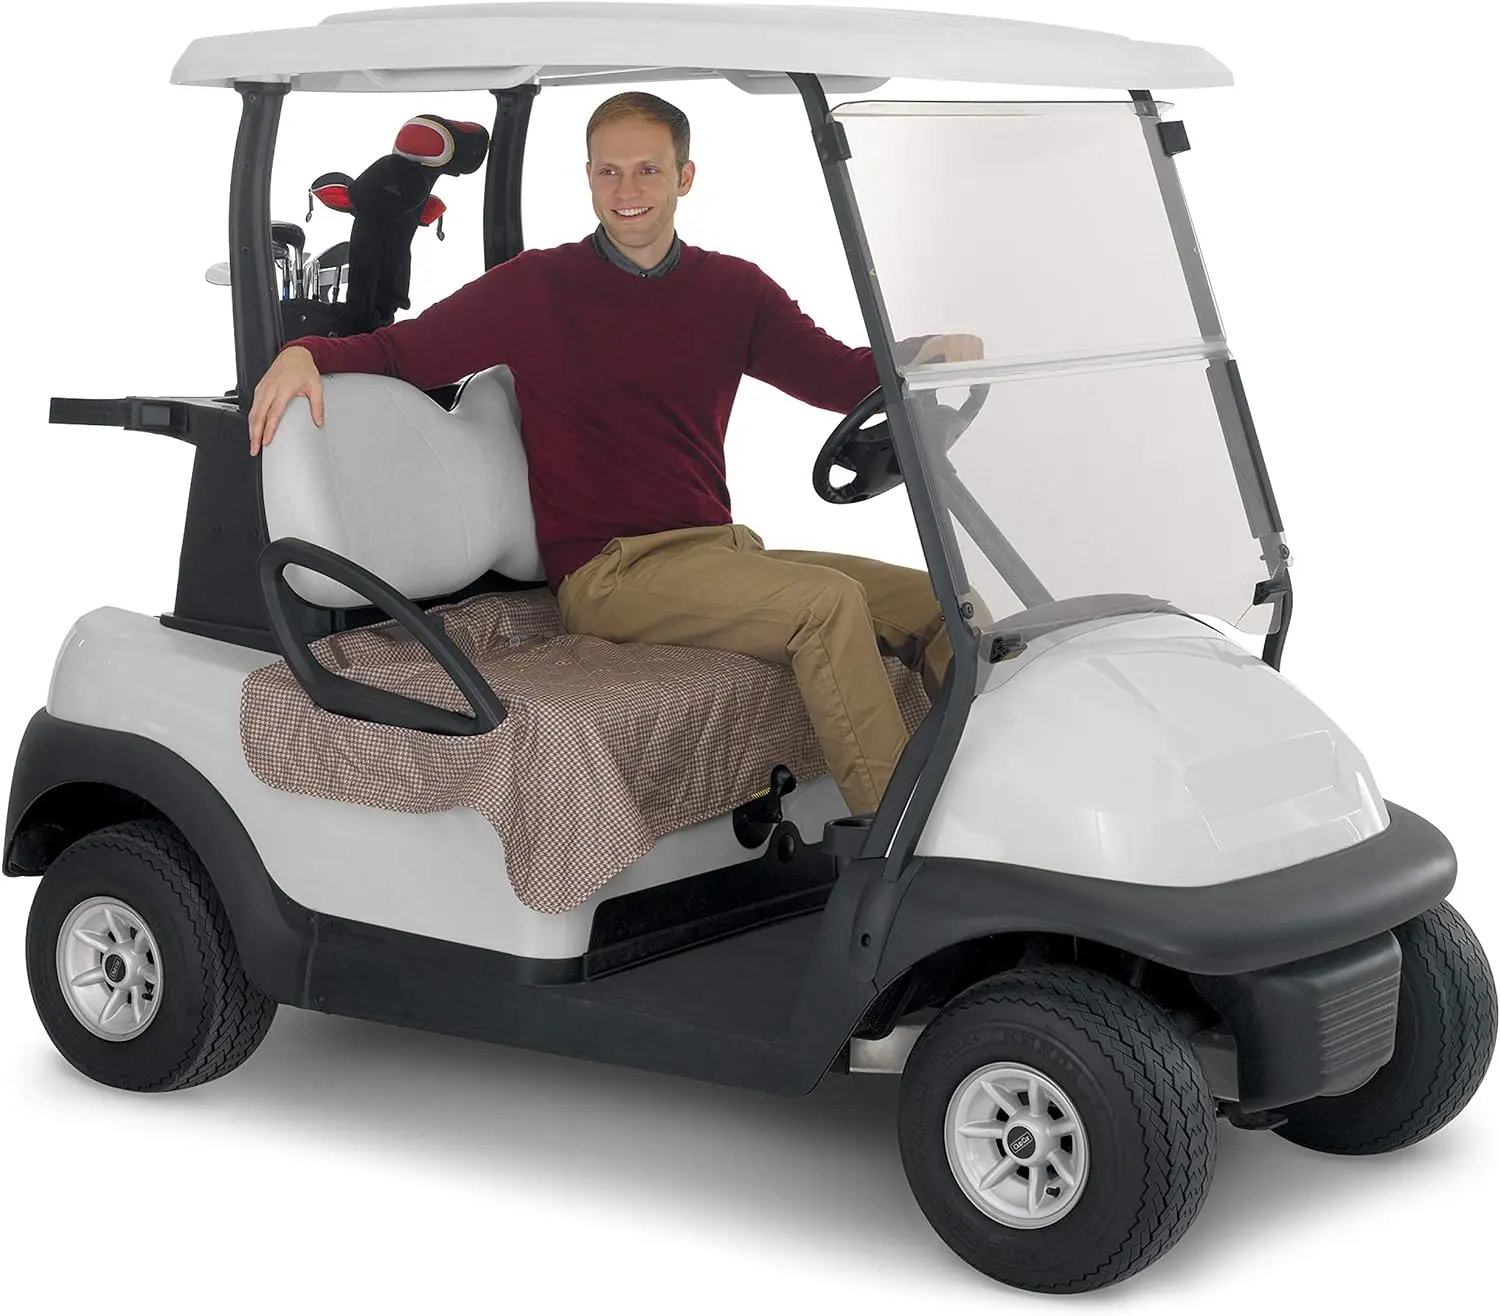 EPA chứng nhận gas Powered 6 hành khách Golf giỏ hàng với động cơ xăng để bán/6 chỗ ngồi Câu lạc bộ xe Golf giỏ hàng với xăng điện